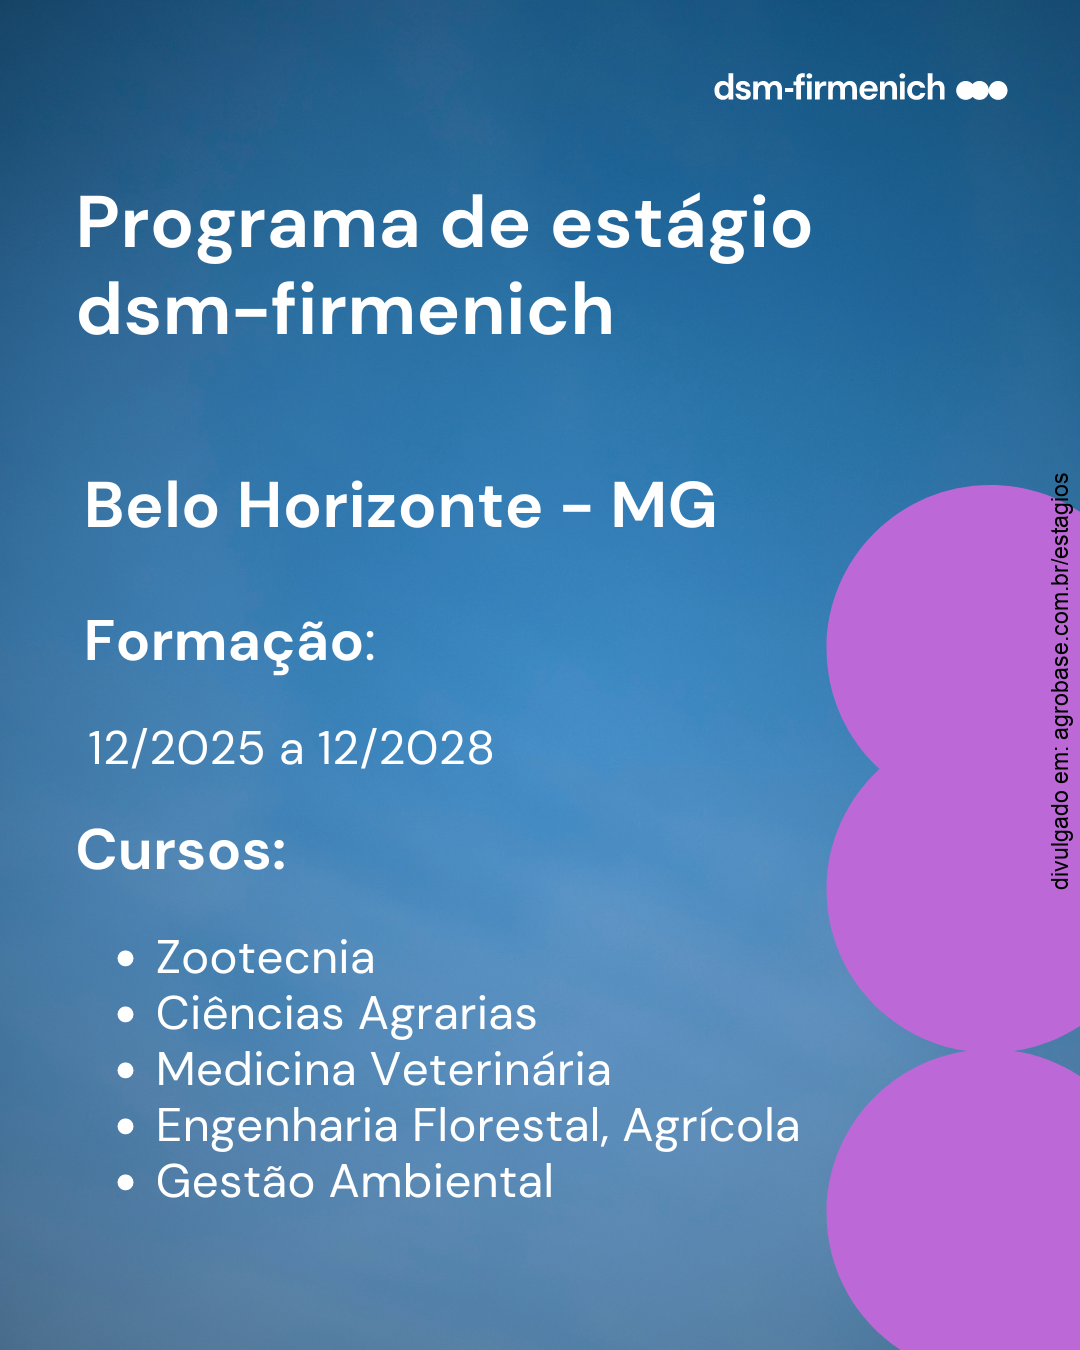 Programa de estágio Dsm-Firmenich – Belo Horizonte/MG